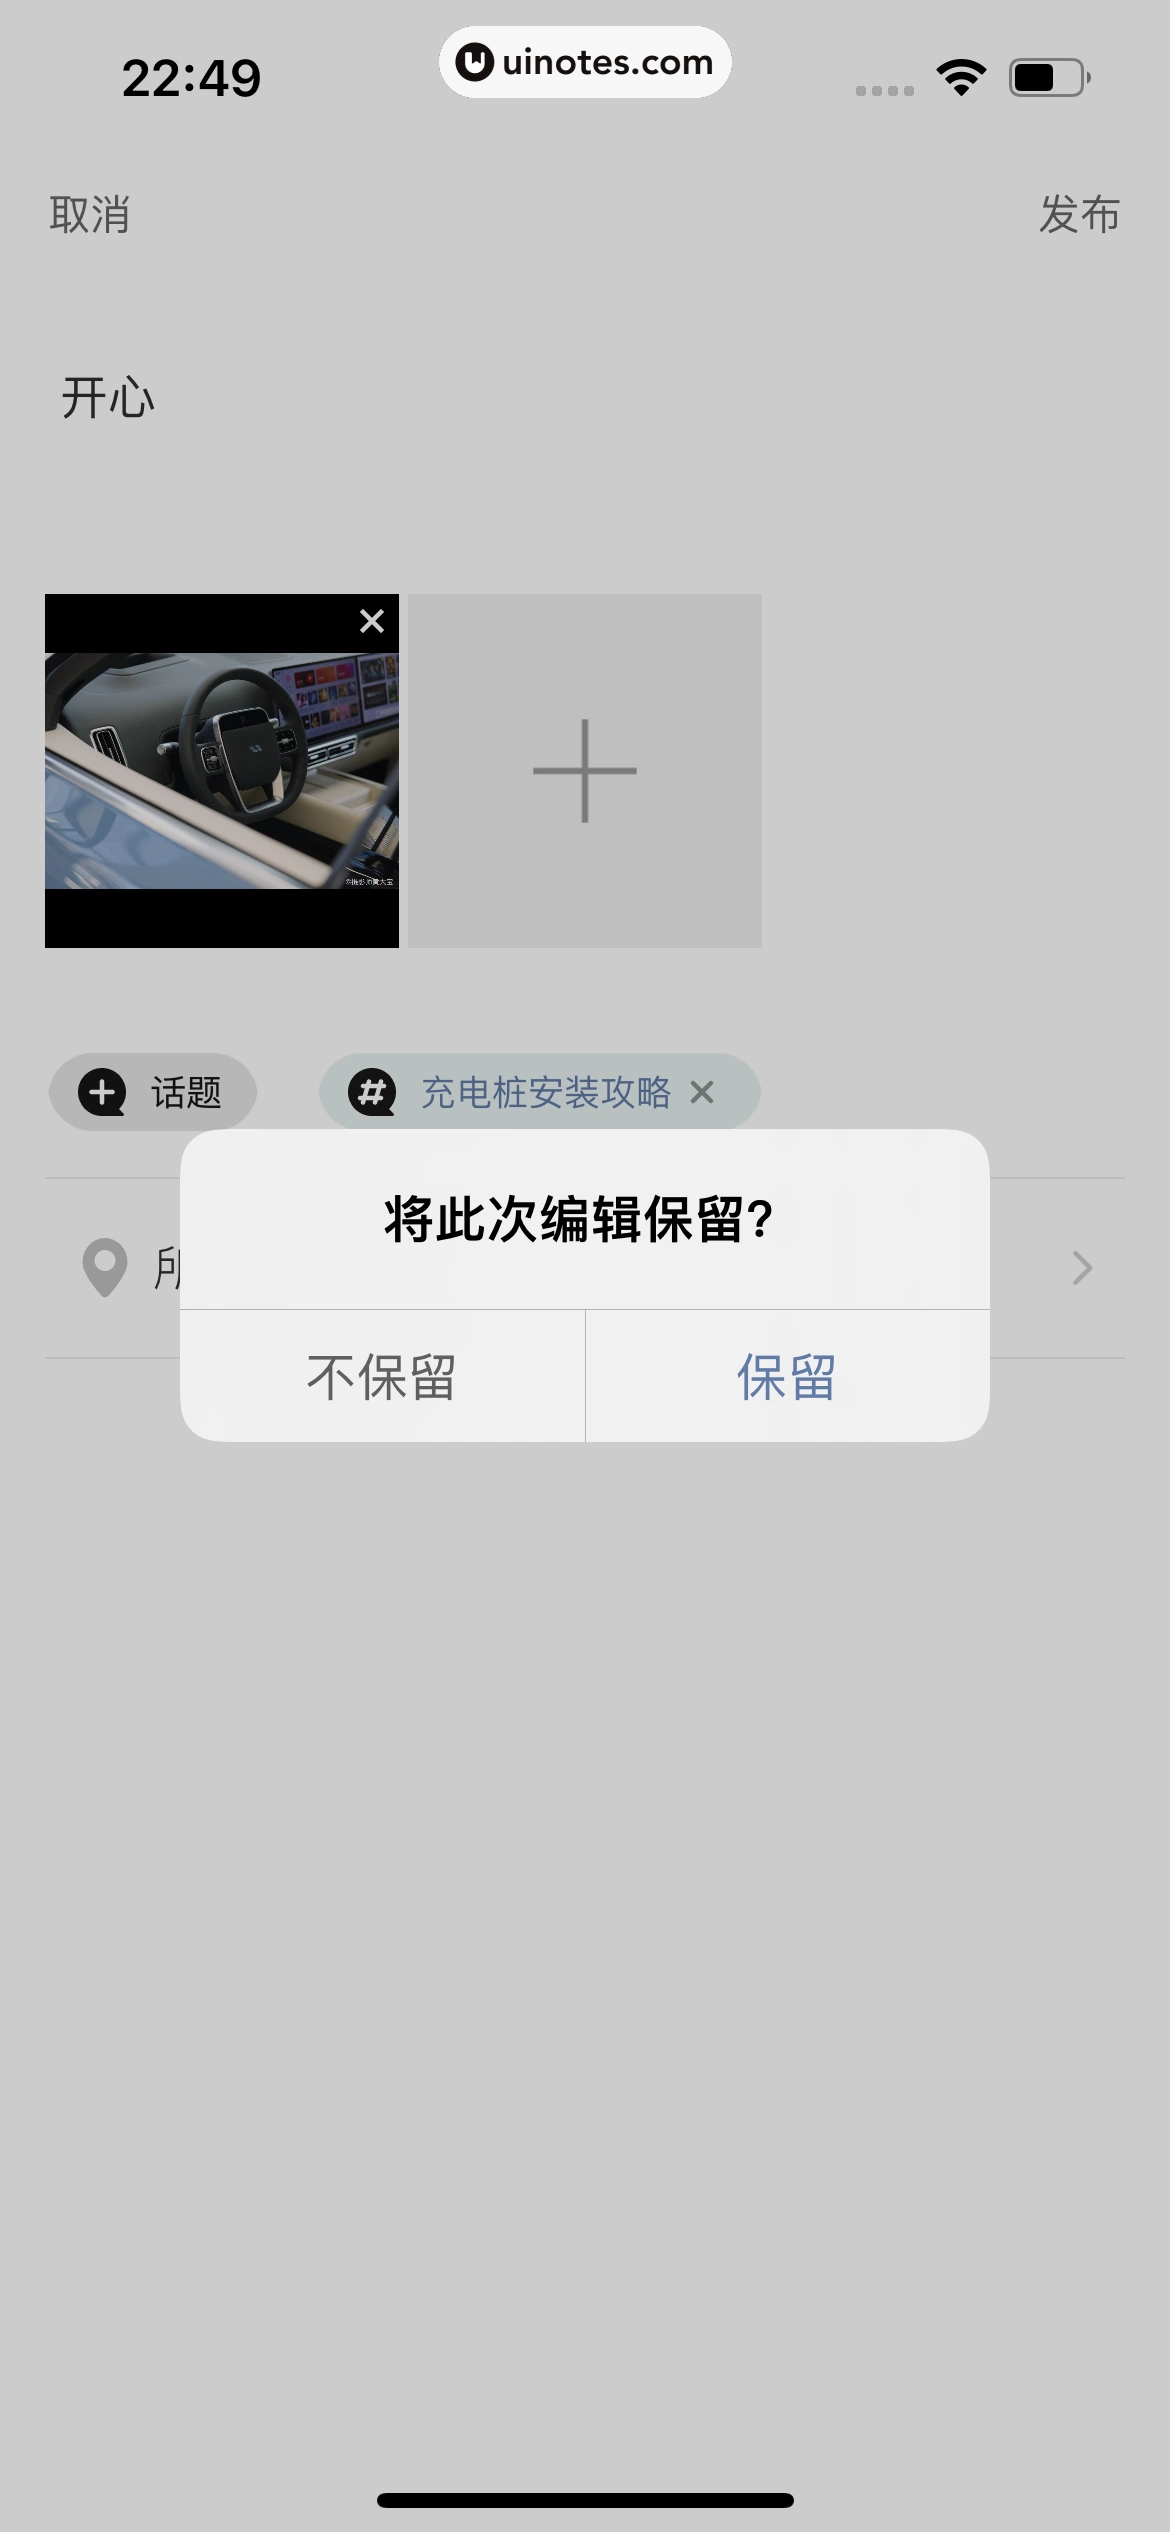 理想汽车 App 截图 060 - UI Notes